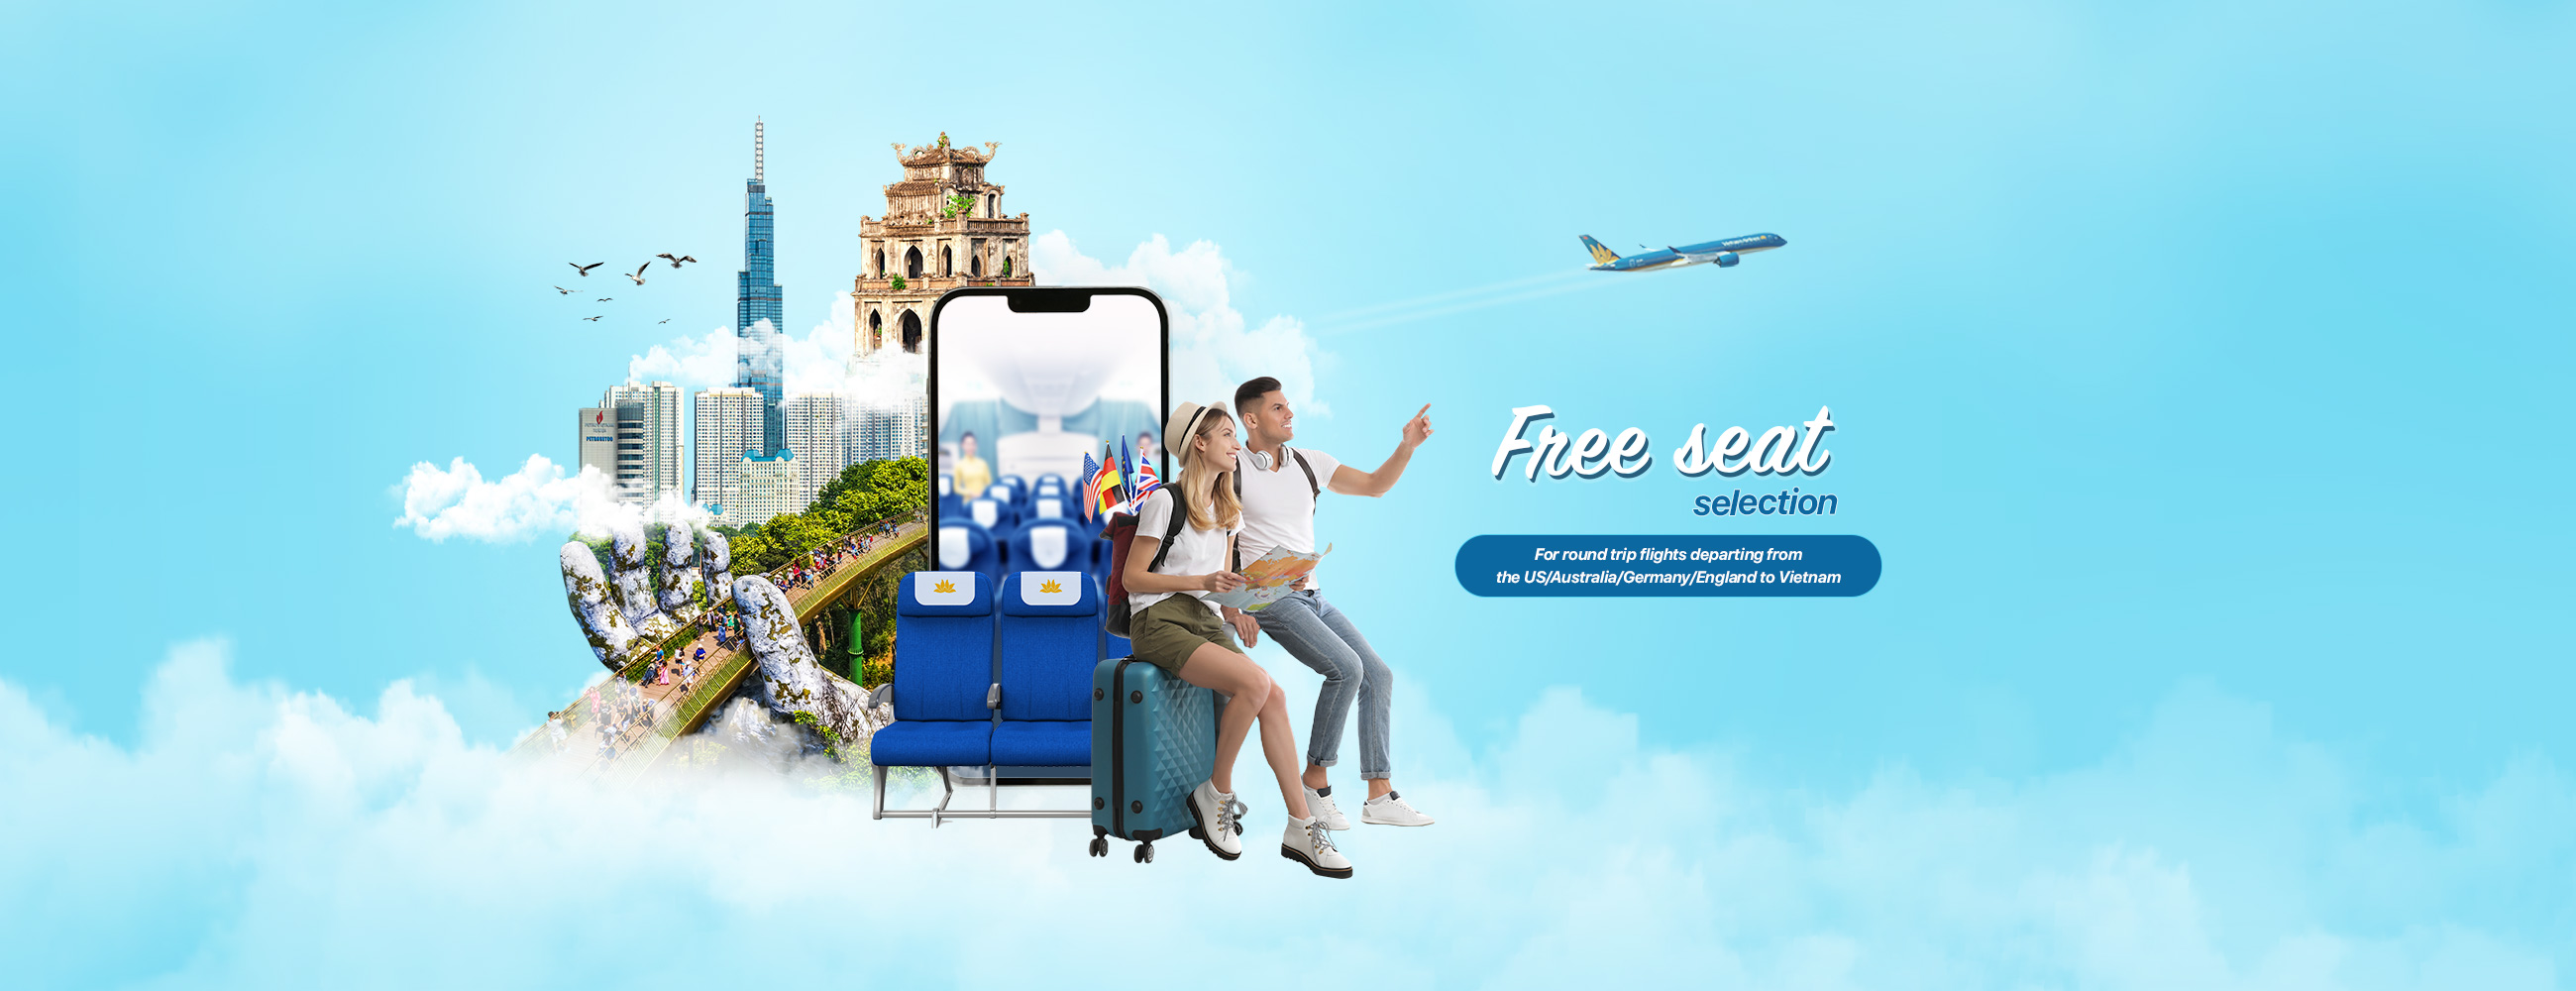 Vietnam Airlines ưu đãi cho vé mua theo nhóm